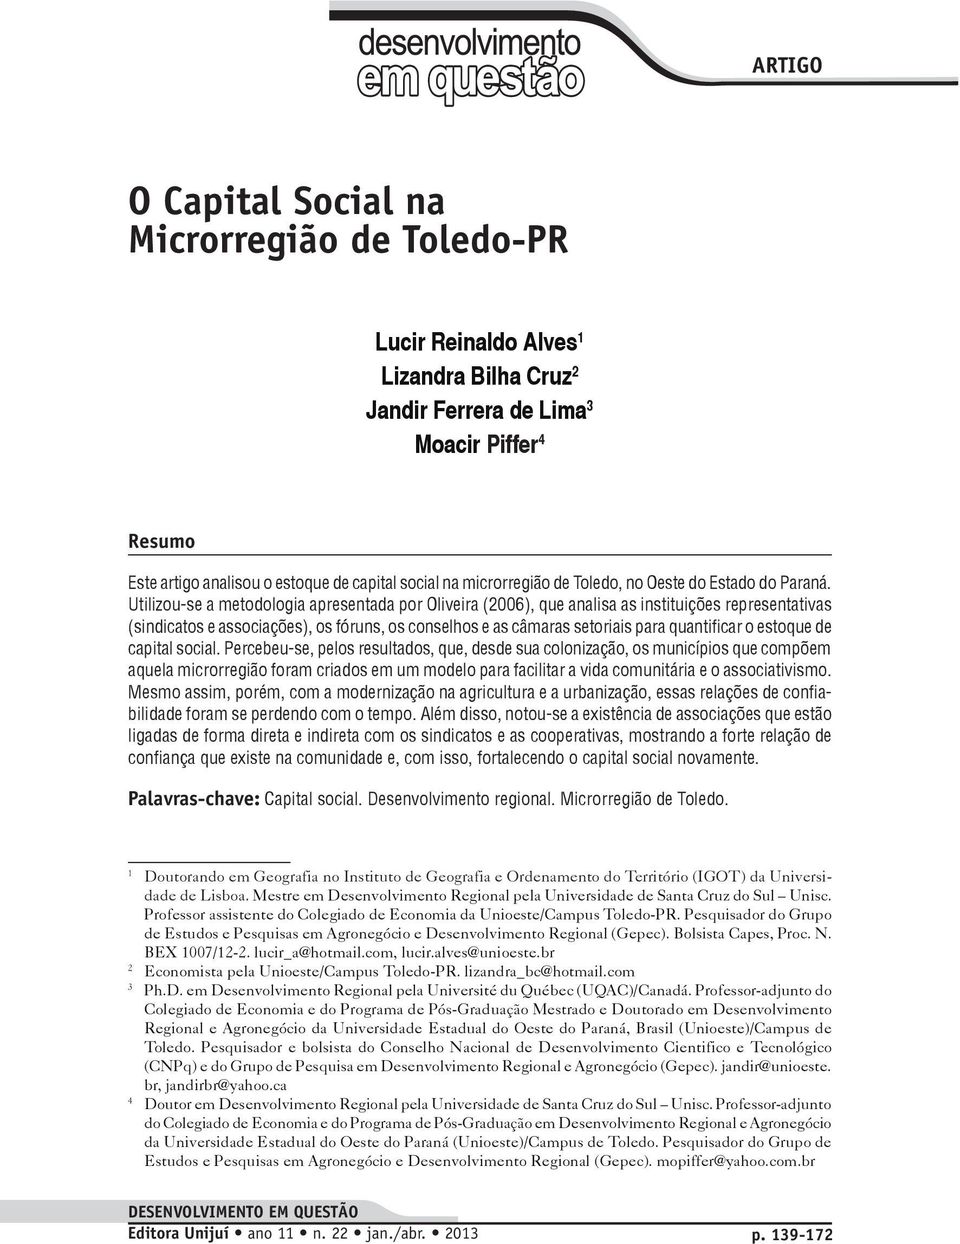 Utilizou-se a metodologia apresentada por Oliveira (2006), que analisa as instituições representativas (sindicatos e associações), os fóruns, os conselhos e as câmaras setoriais para quantificar o